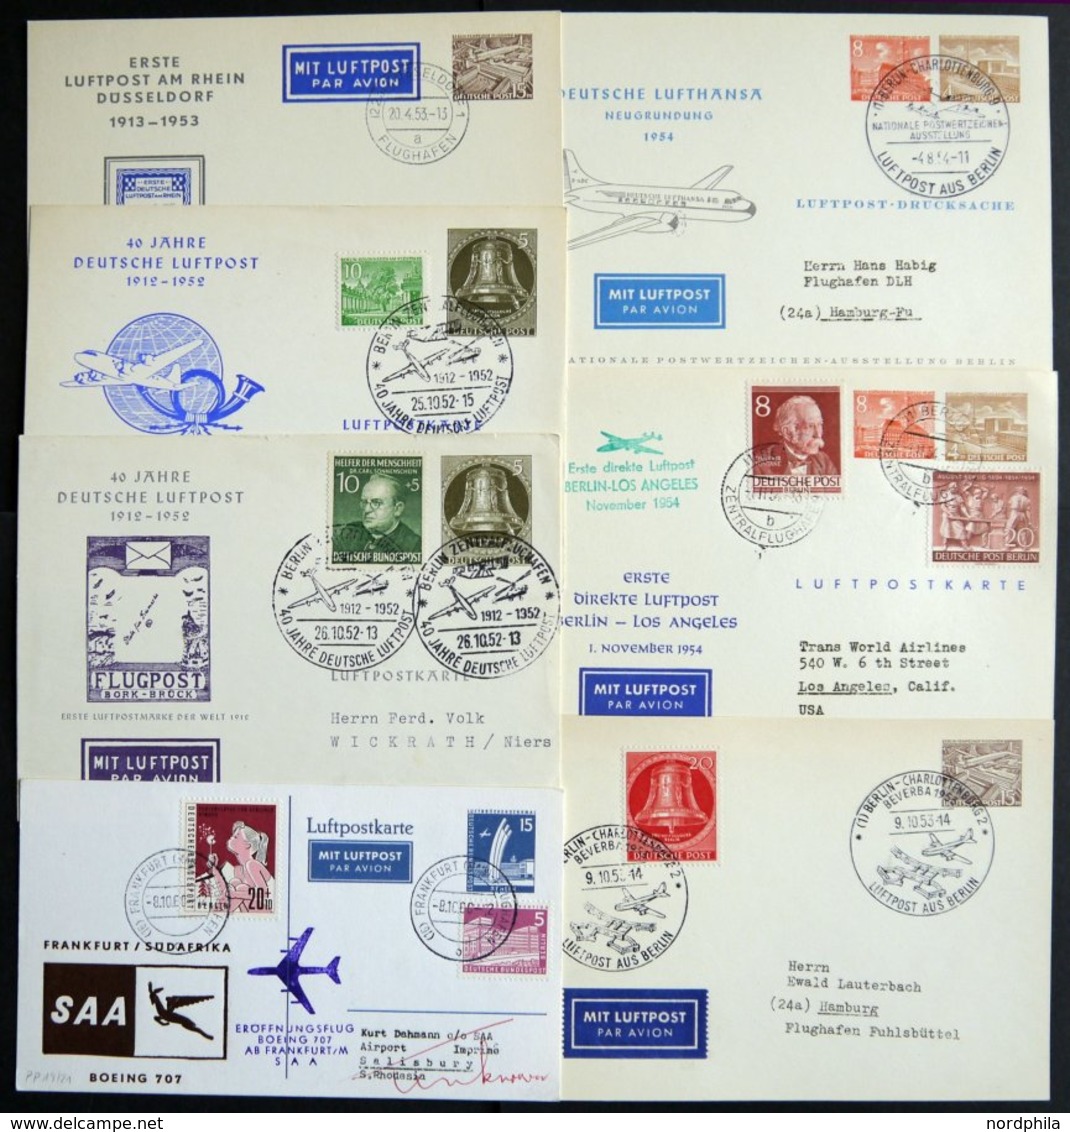 GANZSACHEN APP9/3-19/21 BRIEF, Privatpost: 1952-60, 7 Verschiedene Privatpost-Ganzsachenkarten, Gebraucht, Fast Nur Prac - Colecciones